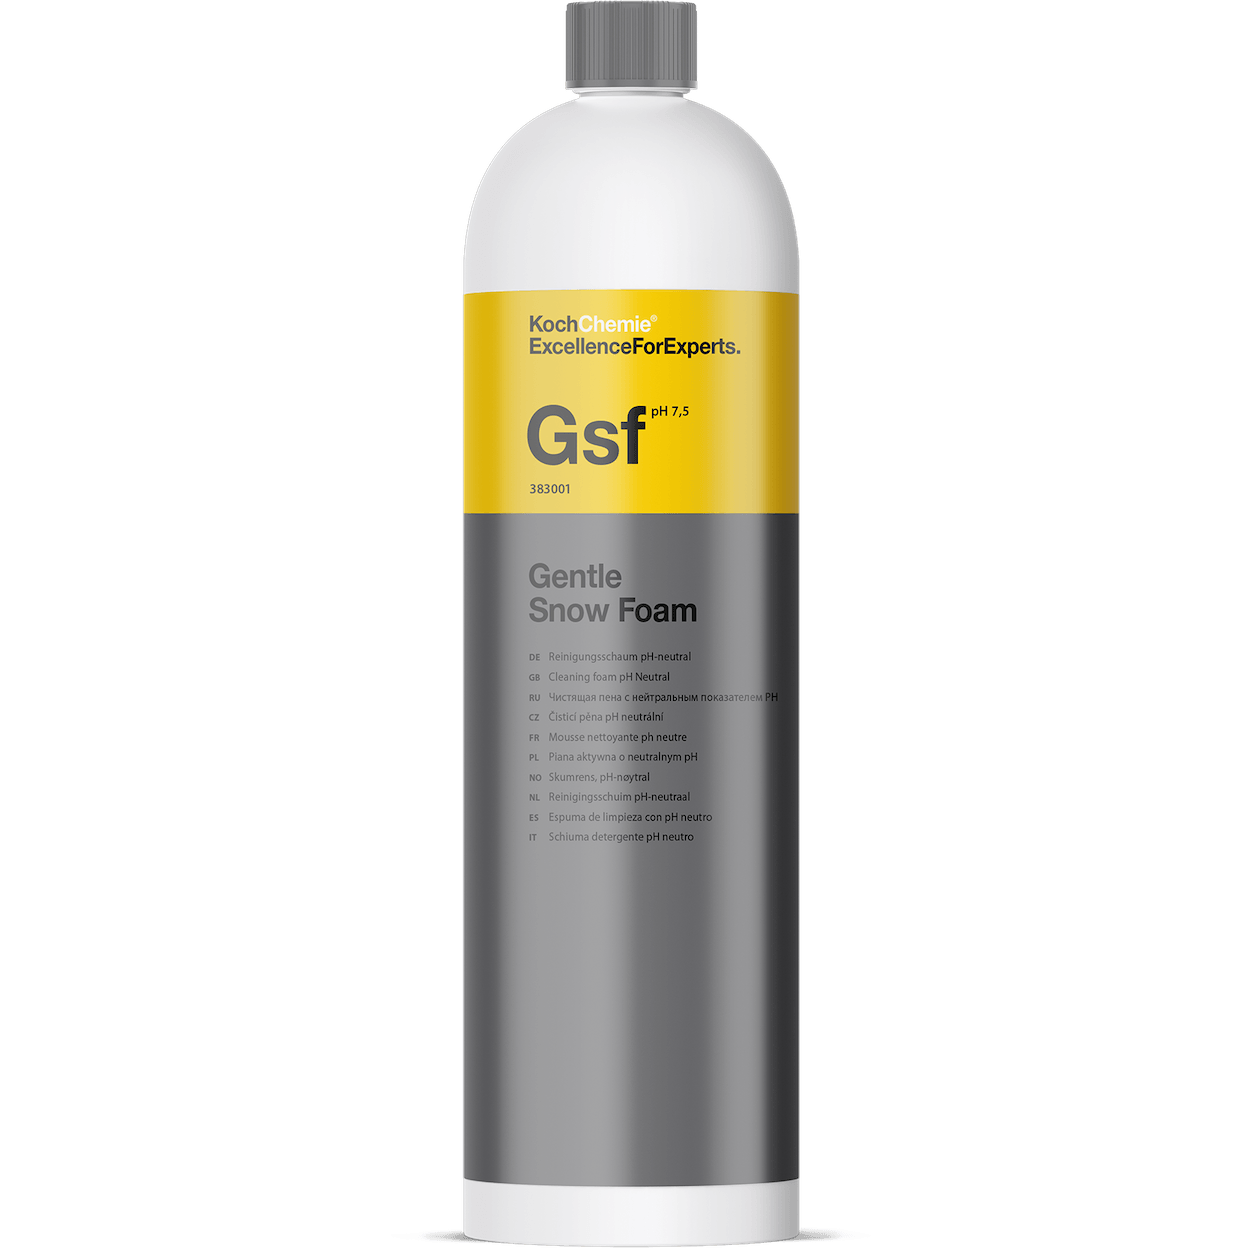 Gentle Snow Foam Gsf - Reinigungsschaum pH-neutral 1l